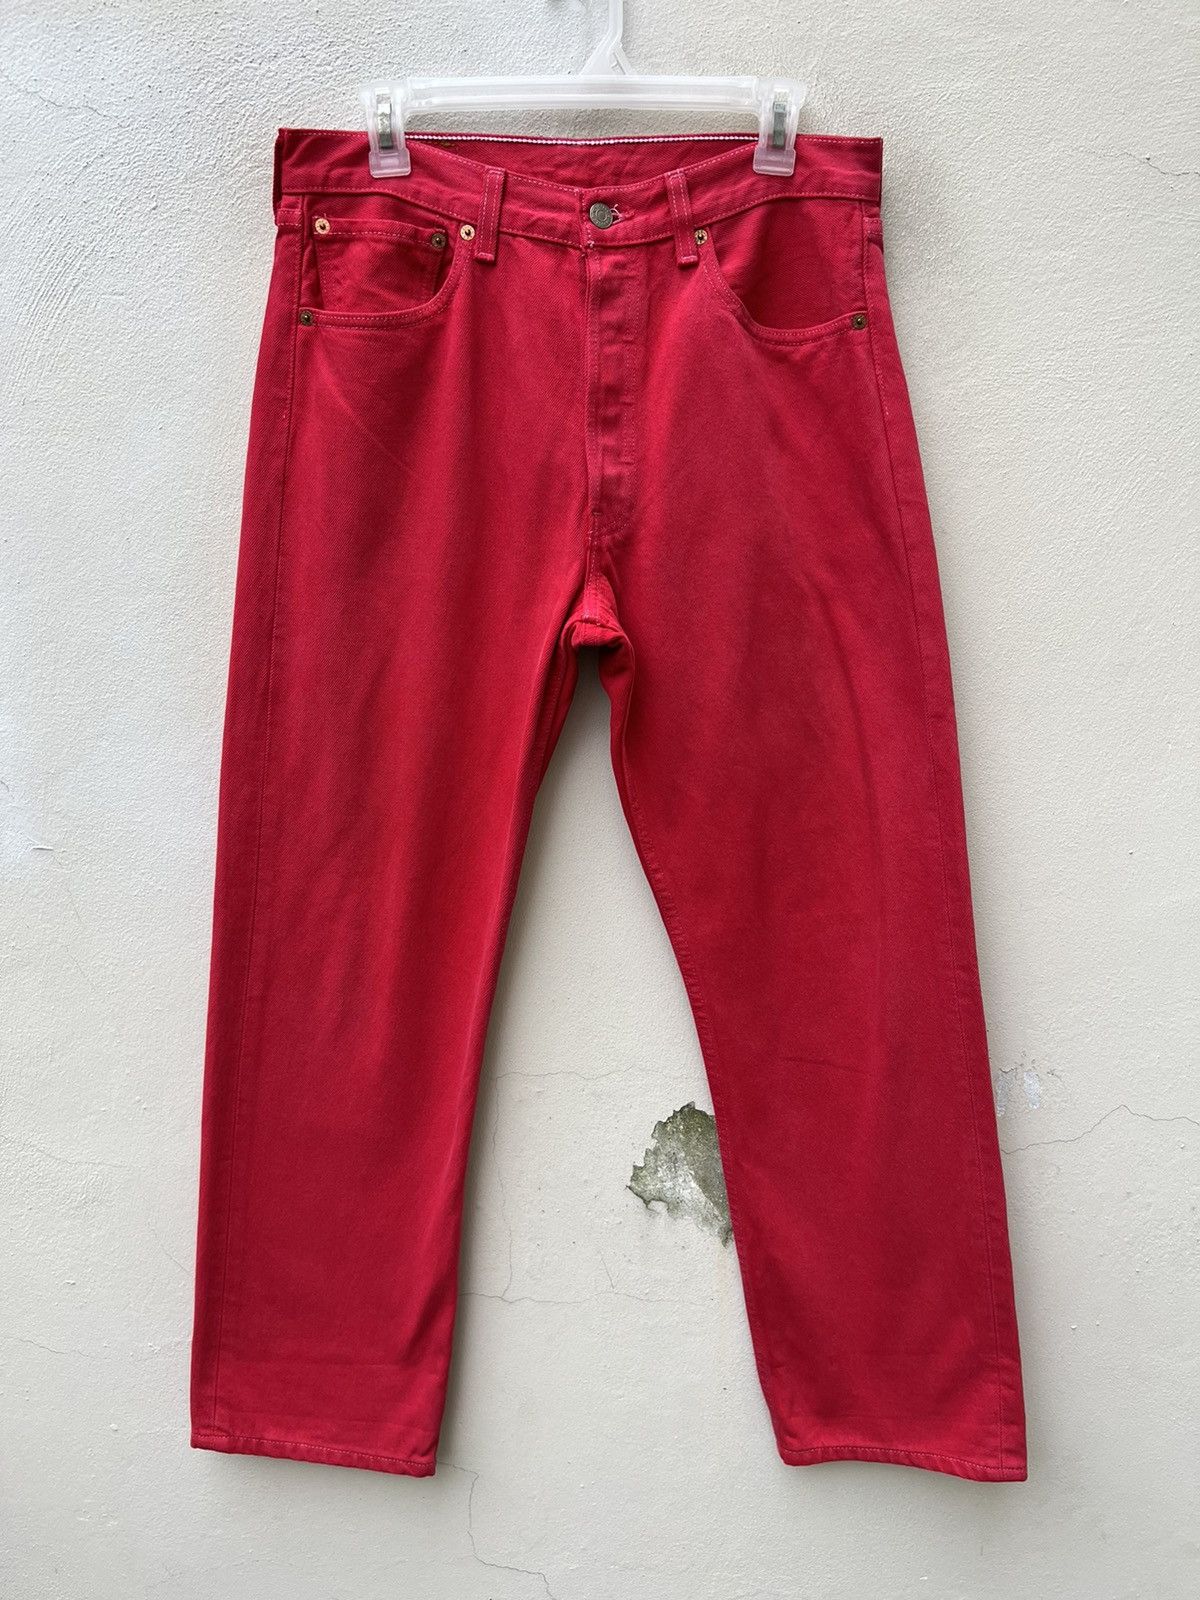 Vintage Vintage 1999 Levi’s 501 Fade Red Denim Jeans Size US 31 - 6 Thumbnail